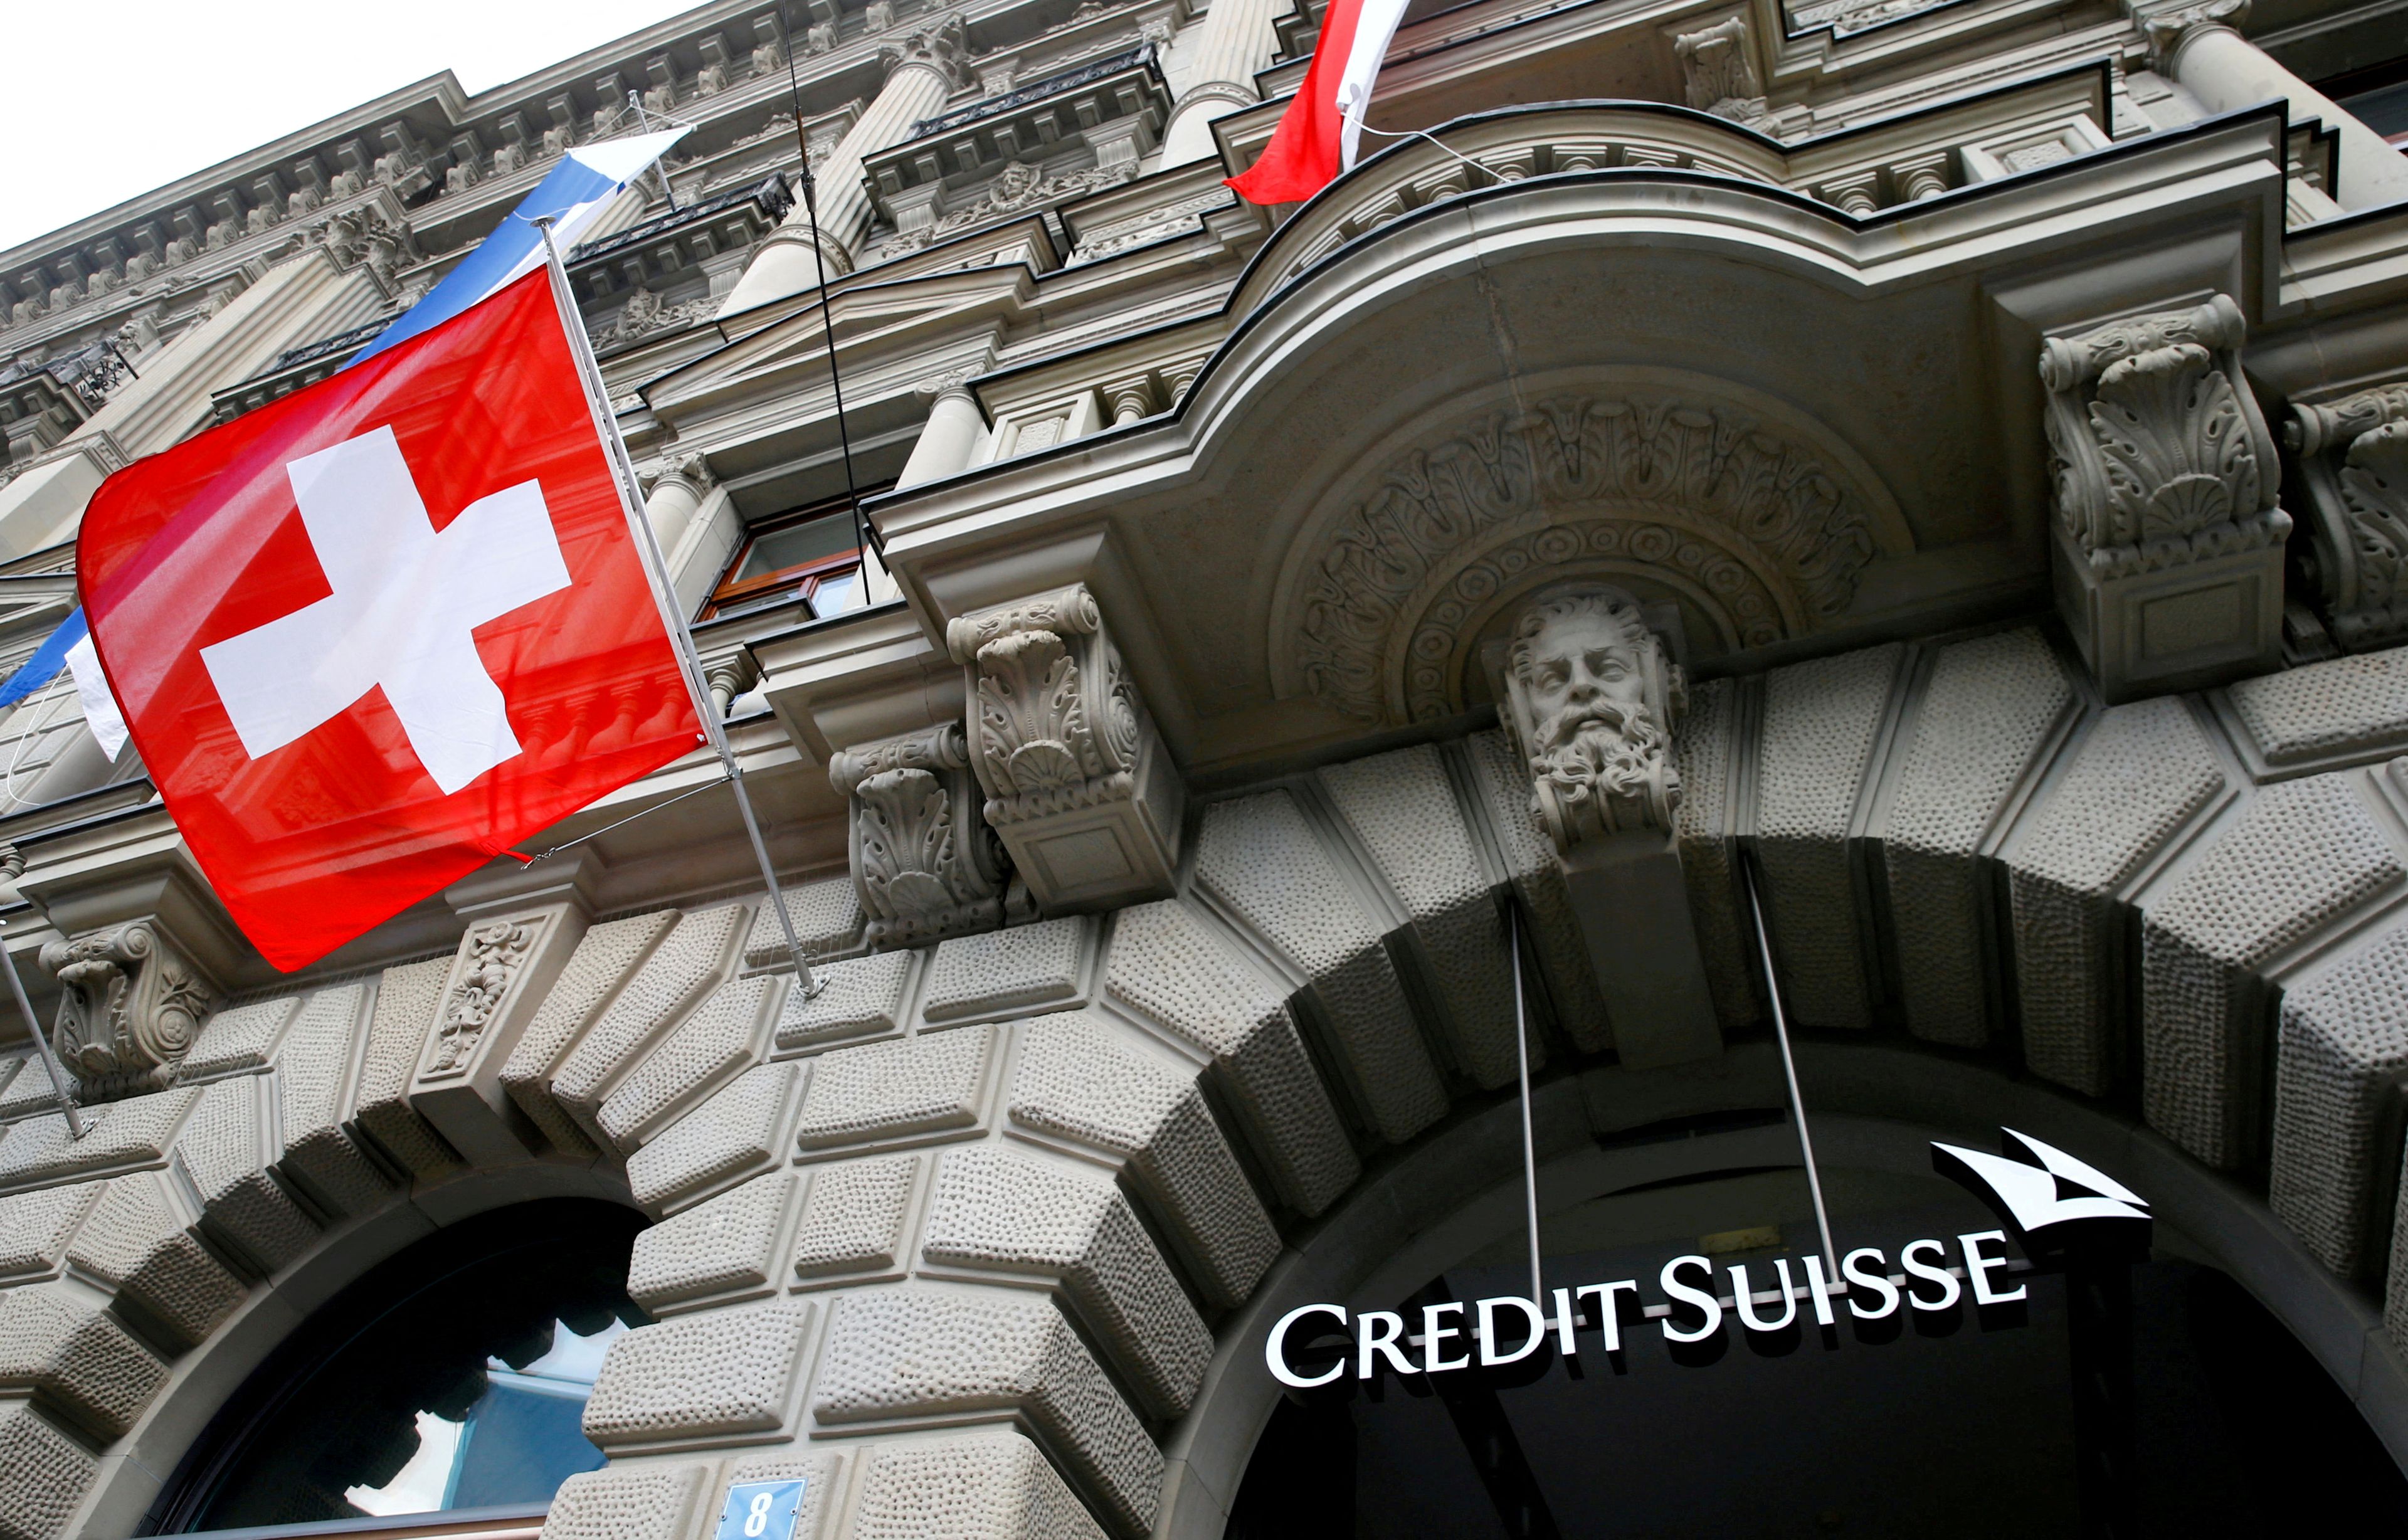 Banco Credit Suisse, con bandera de Suiza